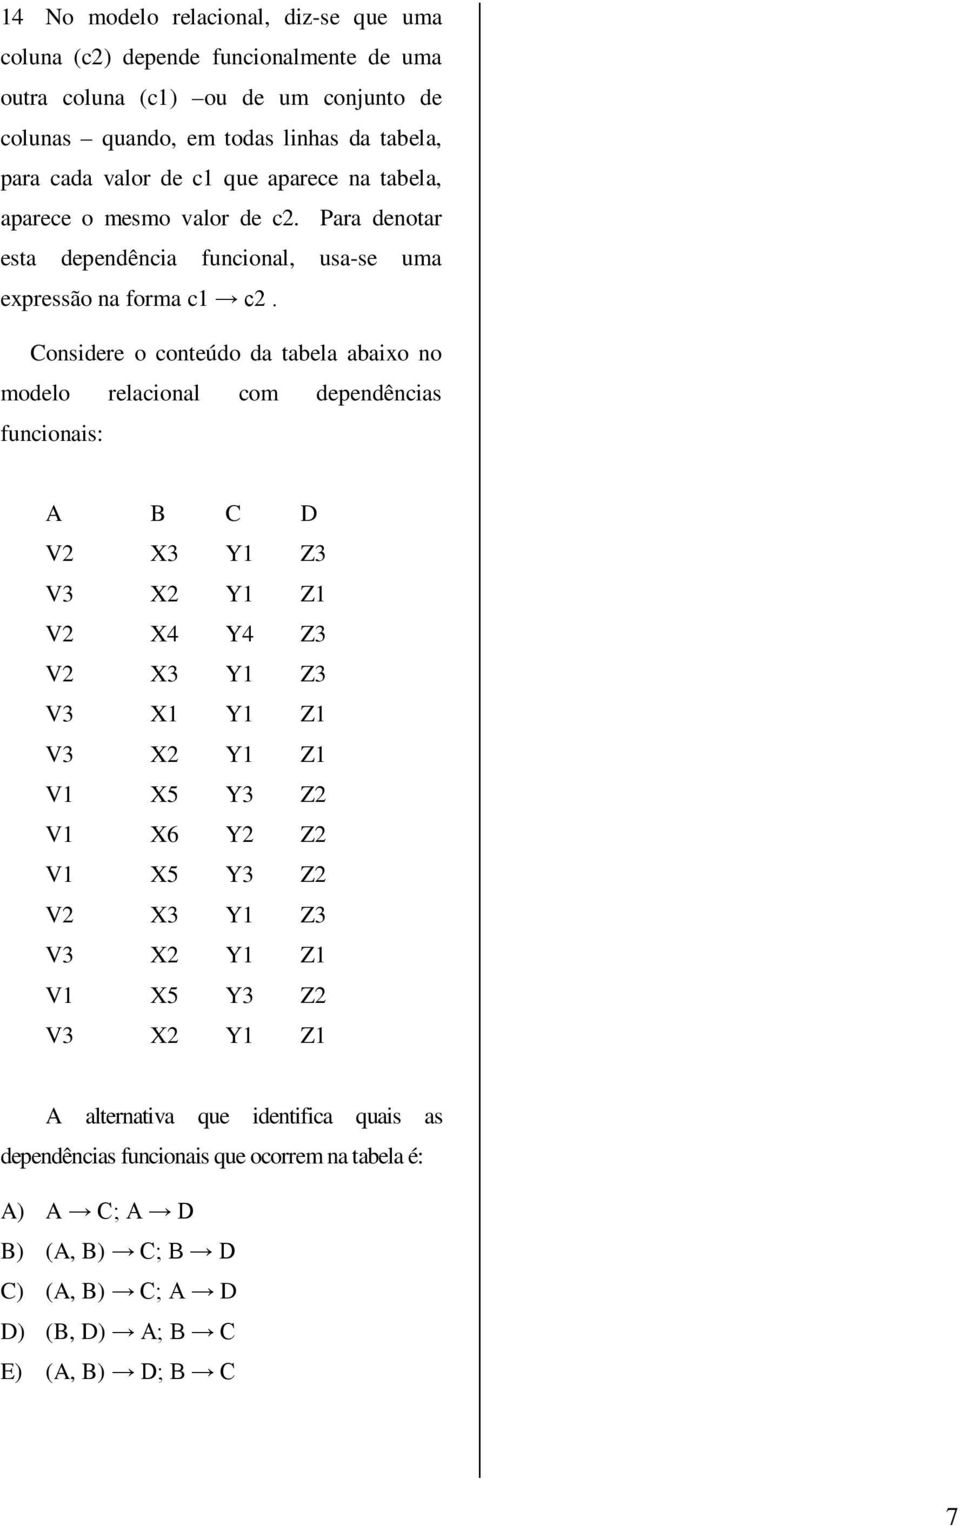 Considere o conteúdo da tabela abaixo no modelo relacional com dependências funcionais: A B C D V2 X3 Y1 Z3 V3 X2 Y1 Z1 V2 X4 Y4 Z3 V2 X3 Y1 Z3 V3 X1 Y1 Z1 V3 X2 Y1 Z1 V1 X5 Y3 Z2 V1